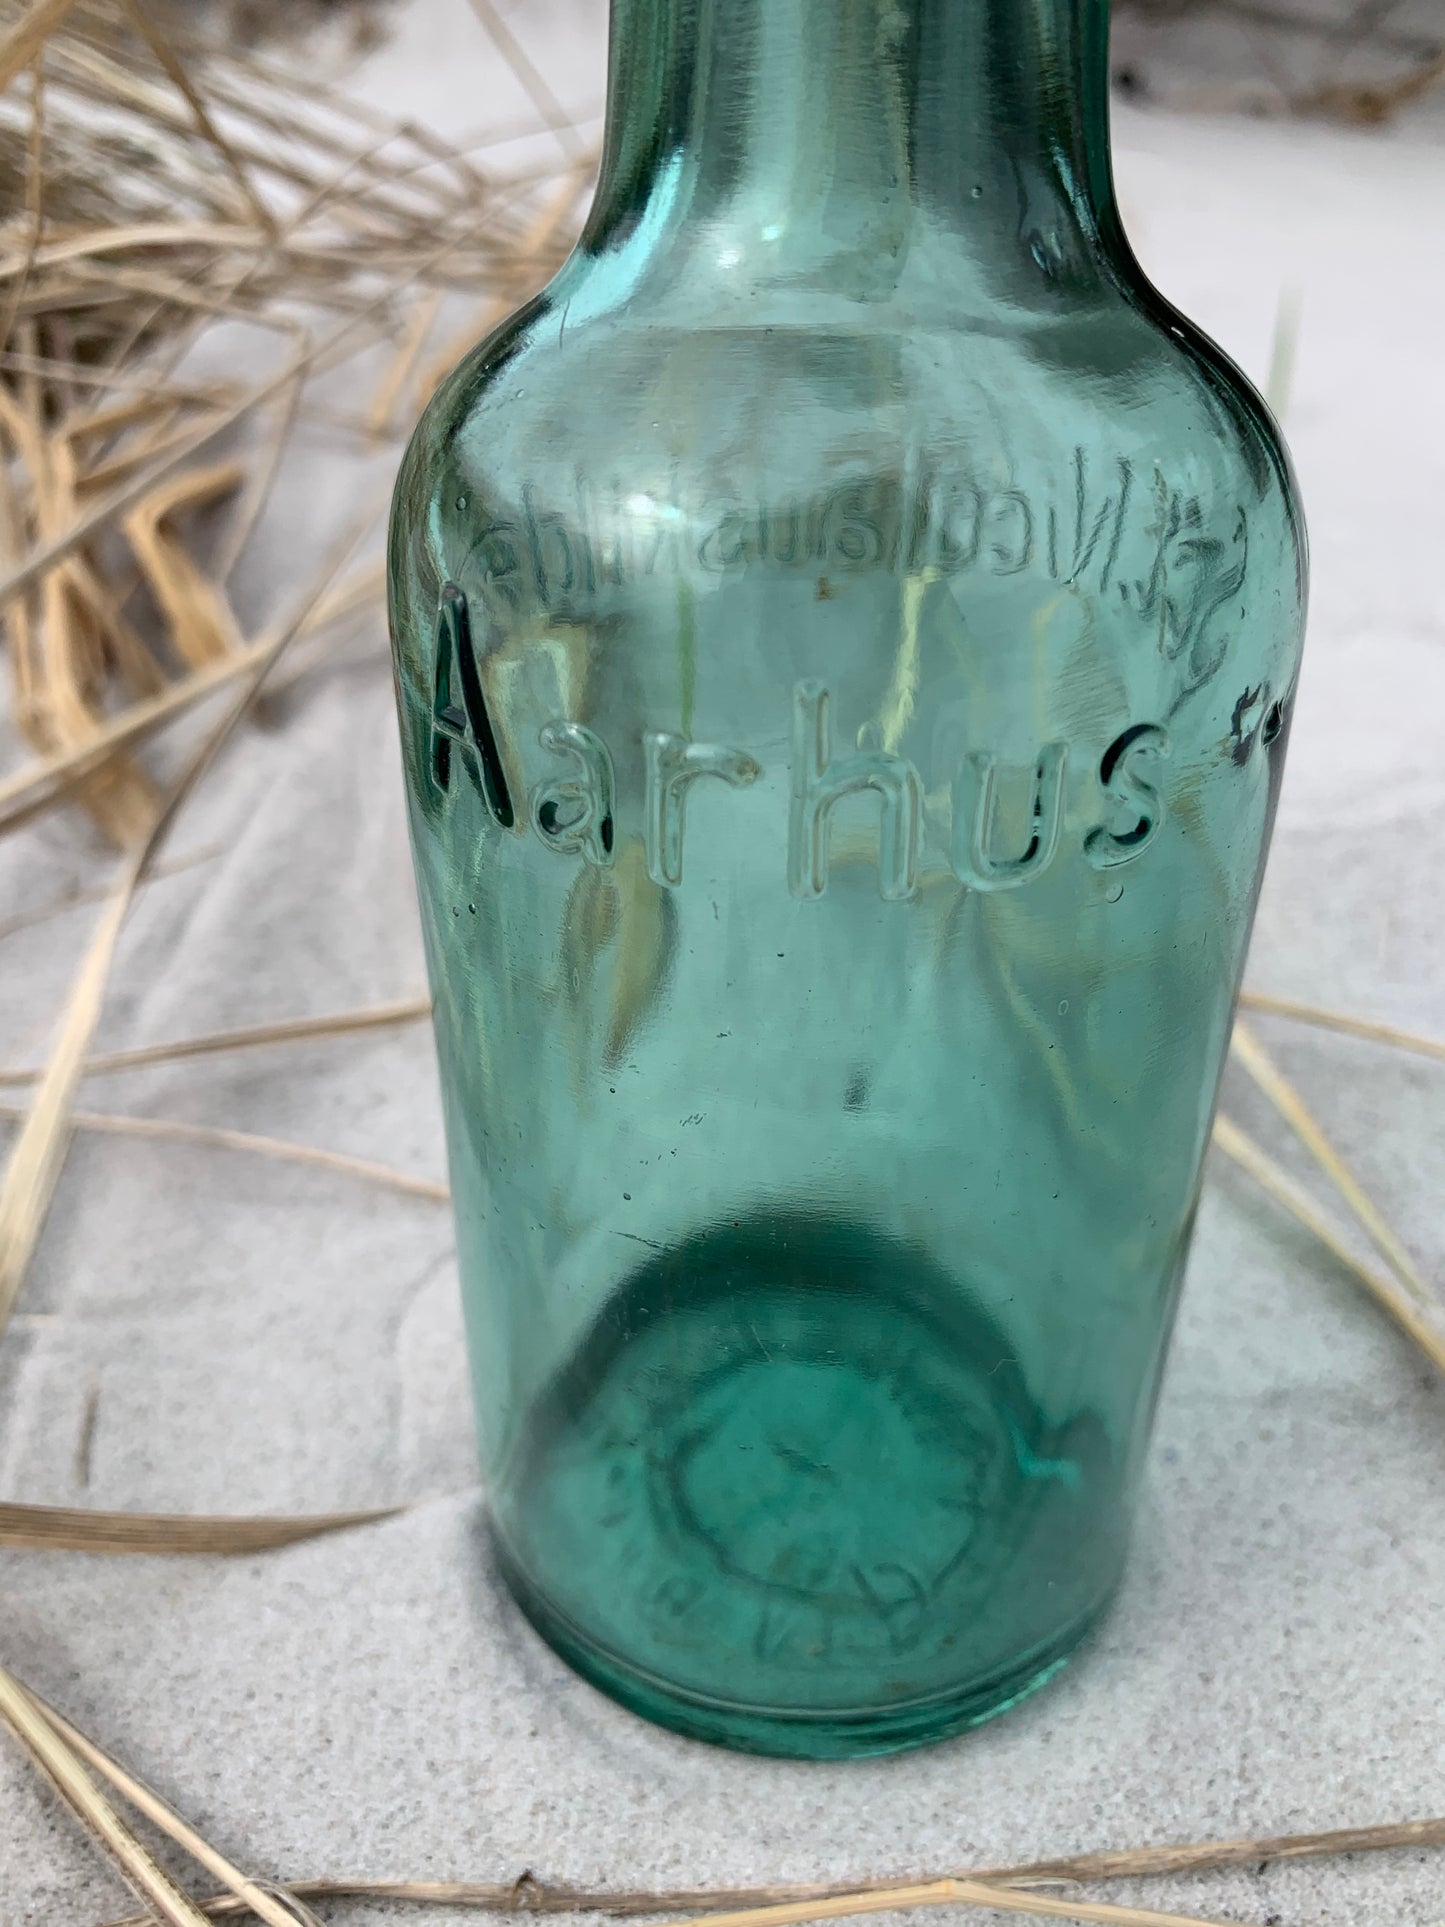 Schöne grüne Lackflasche von Sct. Nicolauskilde in Aarhus